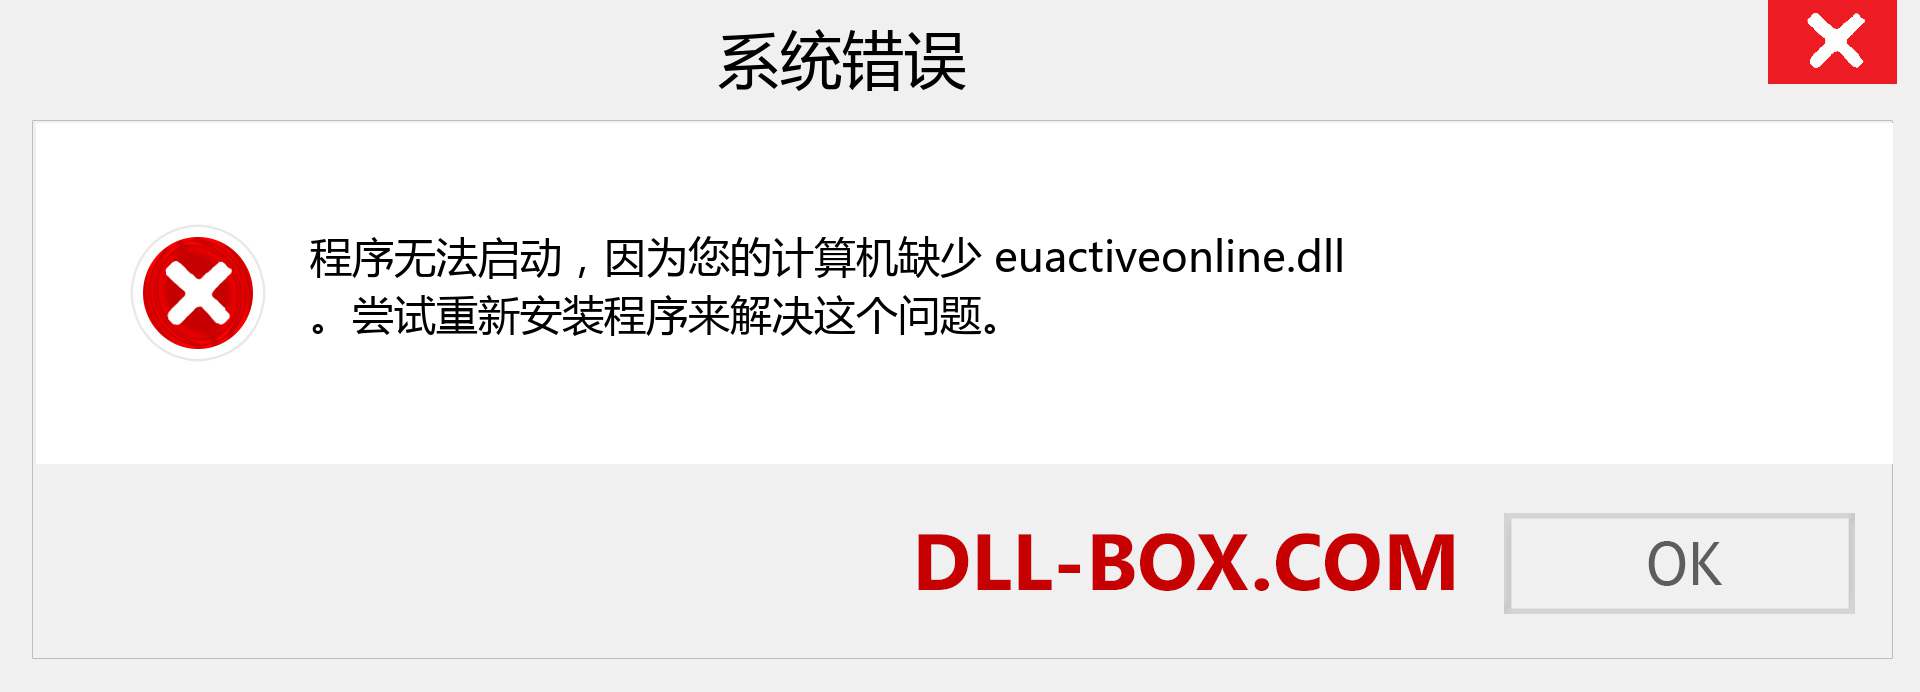 euactiveonline.dll 文件丢失？。 适用于 Windows 7、8、10 的下载 - 修复 Windows、照片、图像上的 euactiveonline dll 丢失错误